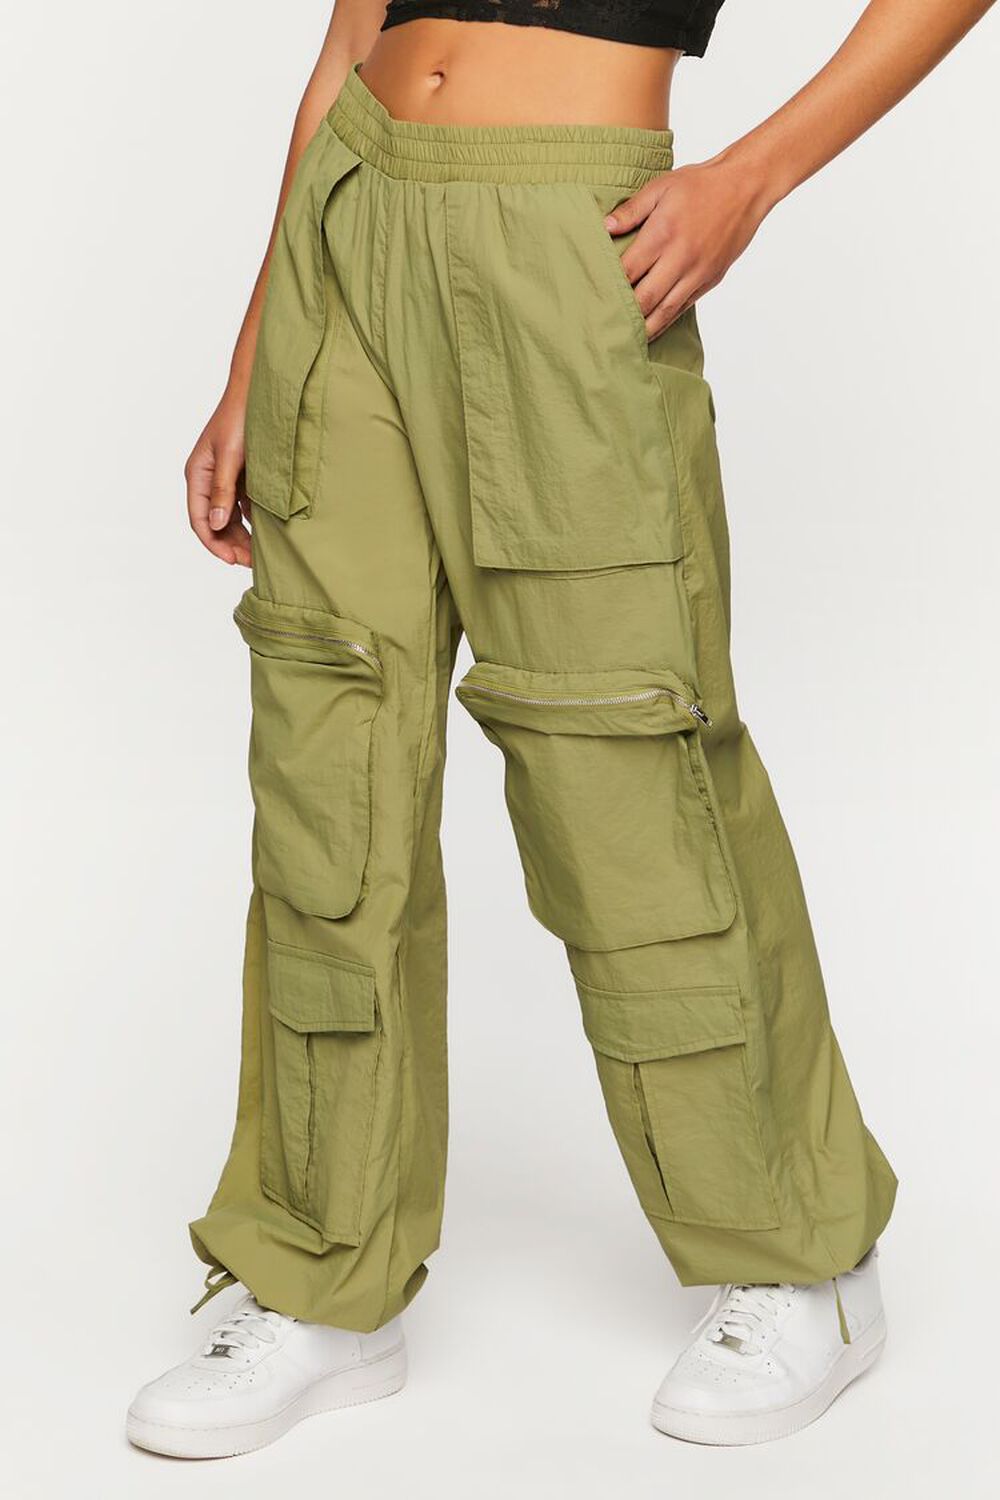 DISCIPBUSH Cargo Pants Women Baggy - Parachute Pants for - Import It All